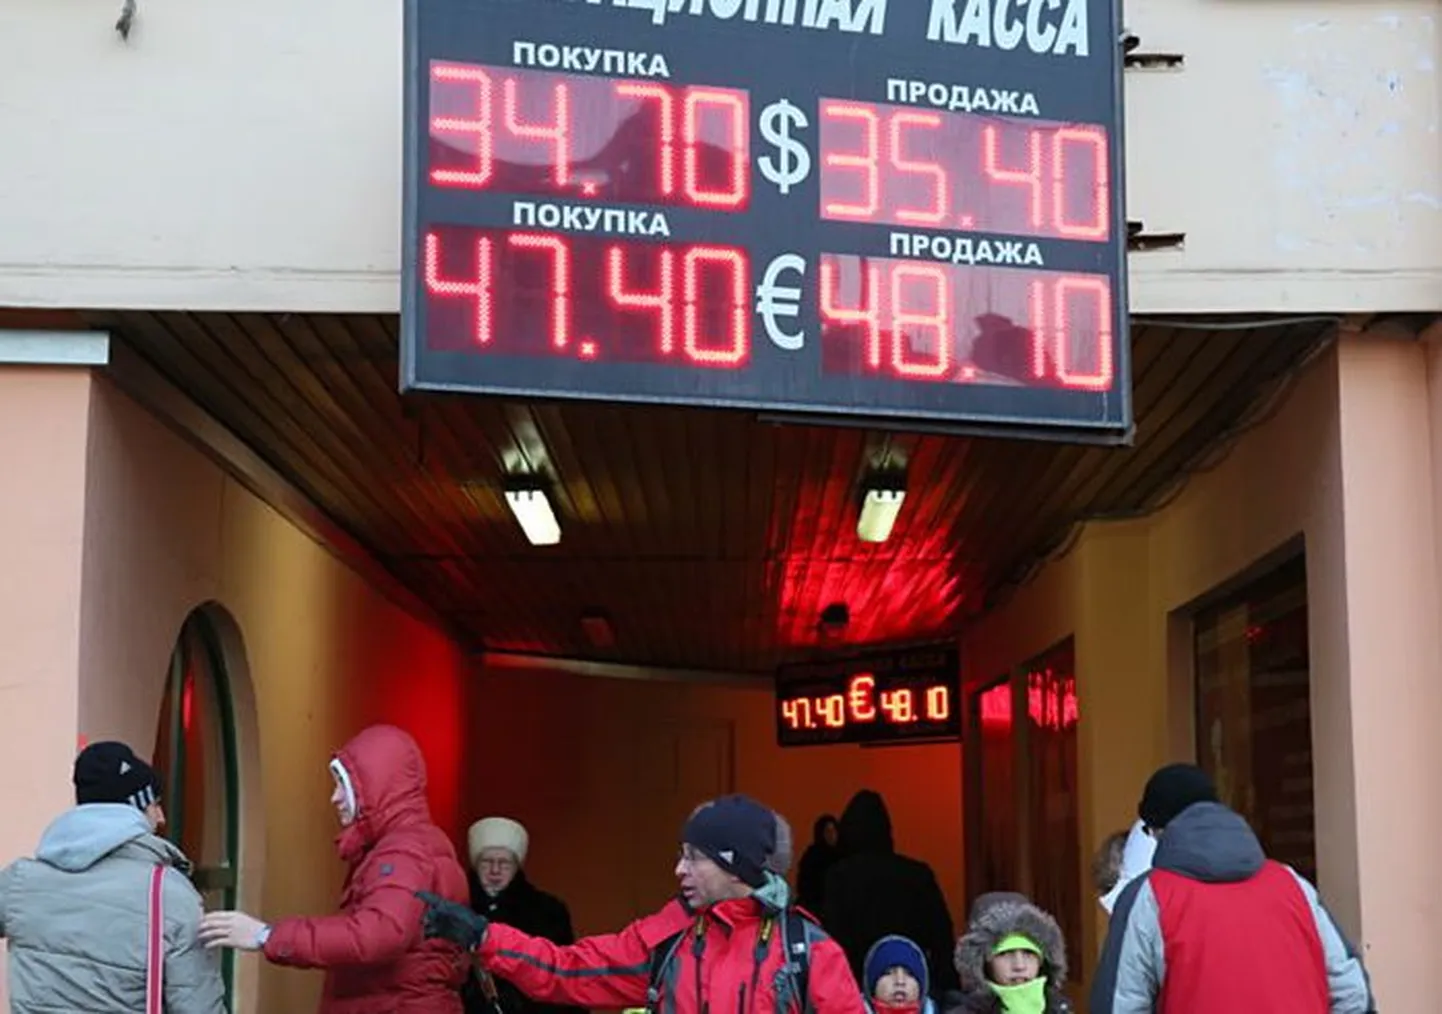 Valuutakursid Moskvas selle aasta jaanuaris.